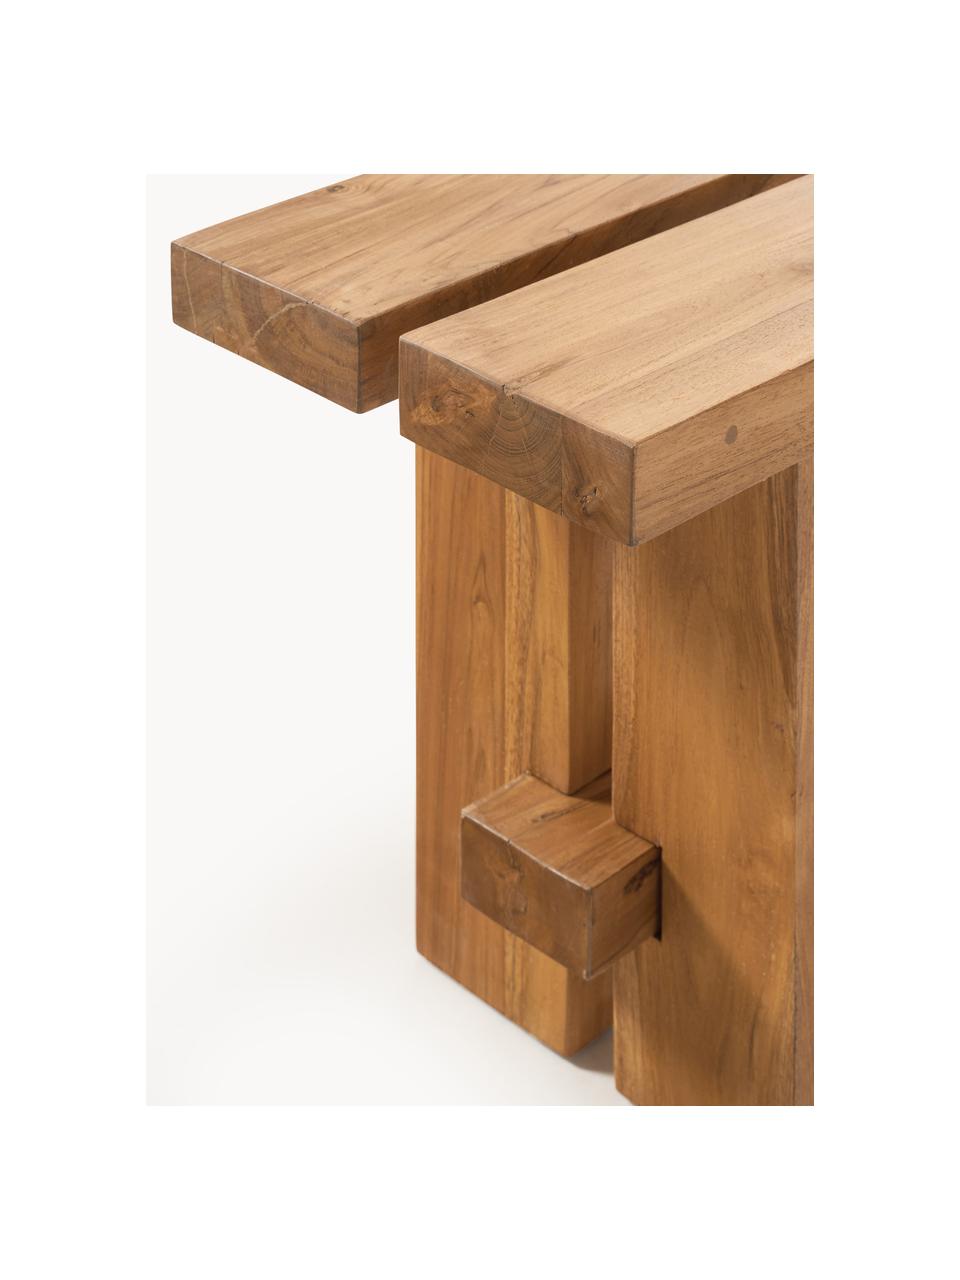 Sitzbank Hugo aus Teakholz, verschiedene Größen, Teakholz, gebeizt

Dieses Produkt wird aus nachhaltig gewonnenem, FSC®-zertifiziertem Holz gefertigt., Teakholz, gebeizt, B 220 x T 35 cm